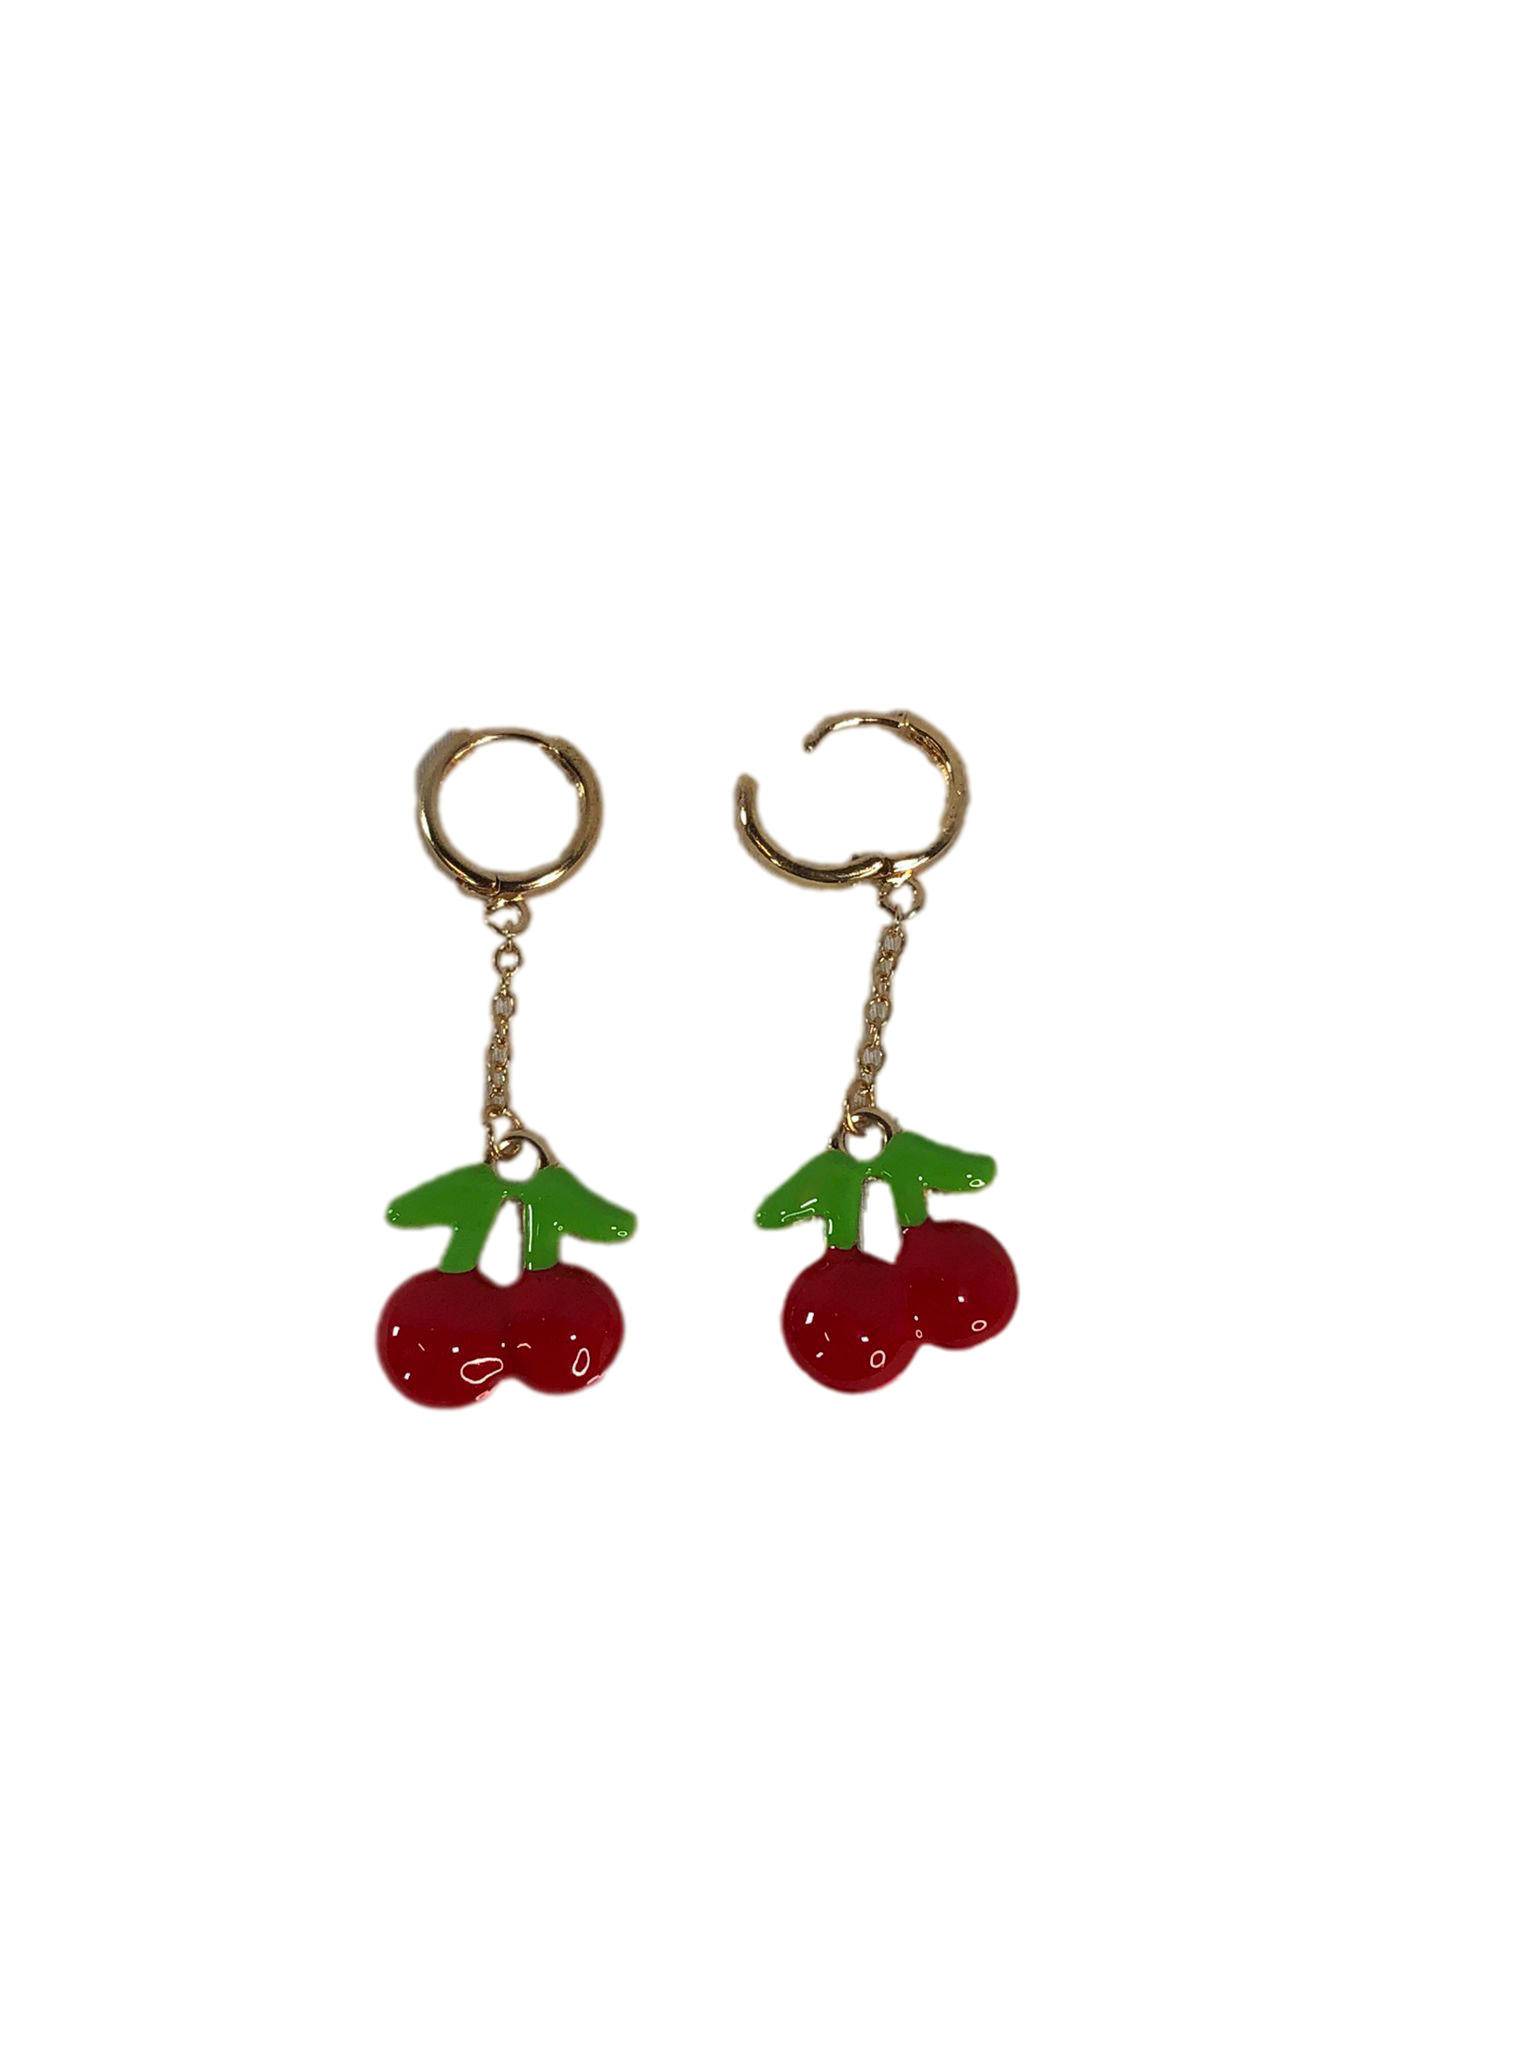 Golden Cherry Dangle Earrings for Women and Girls